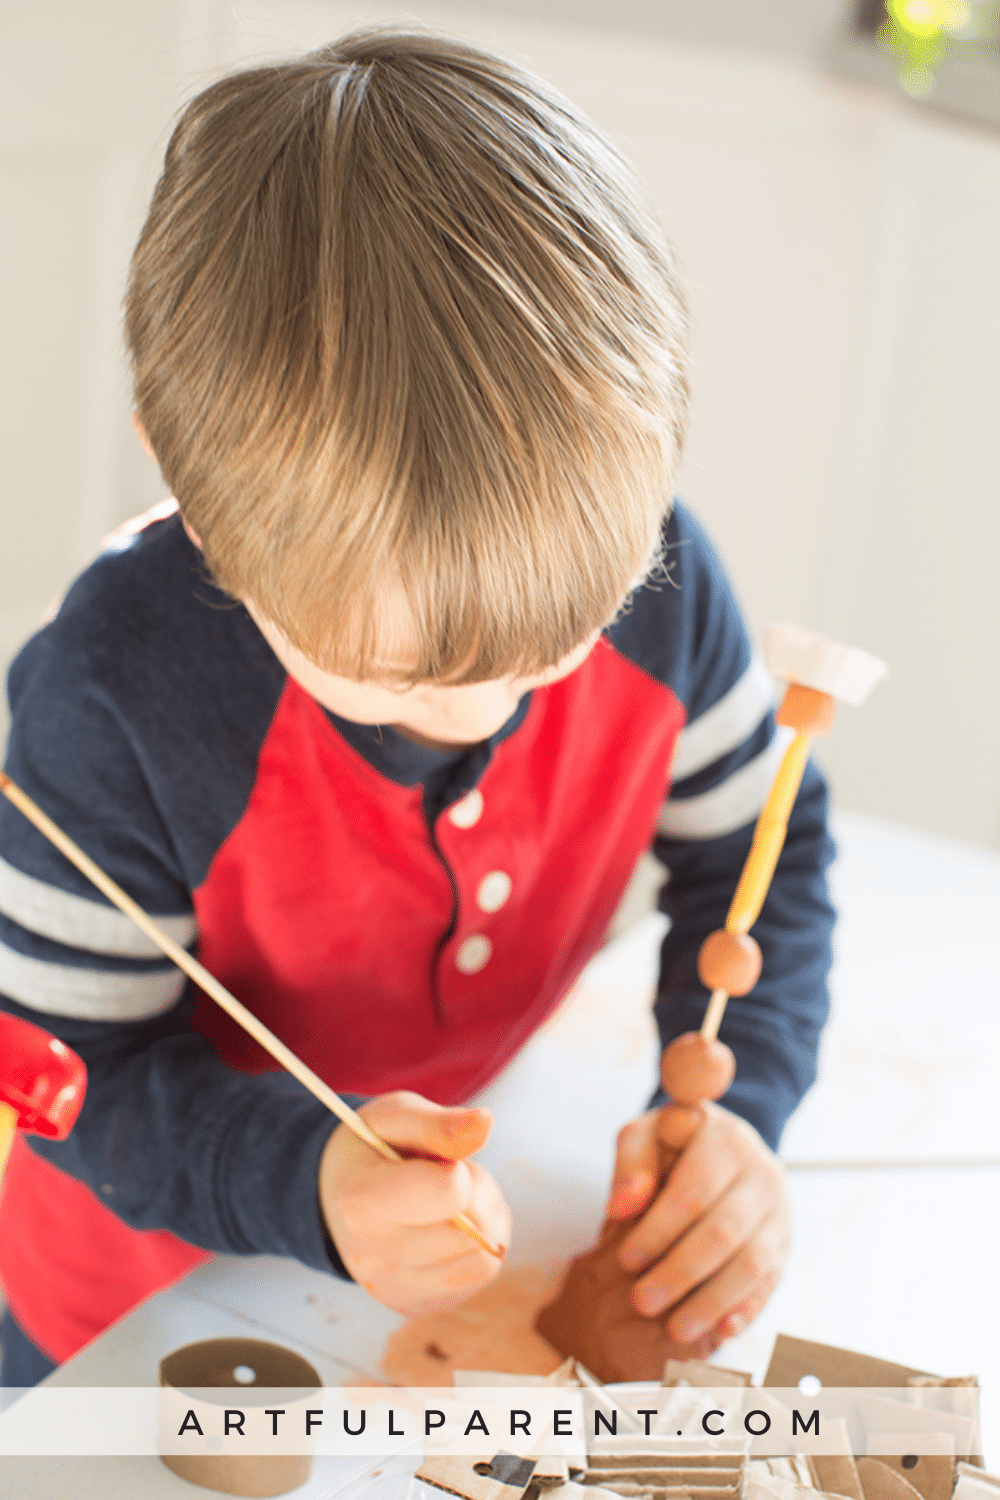 10 Easy Preschool Art Activities for Kids